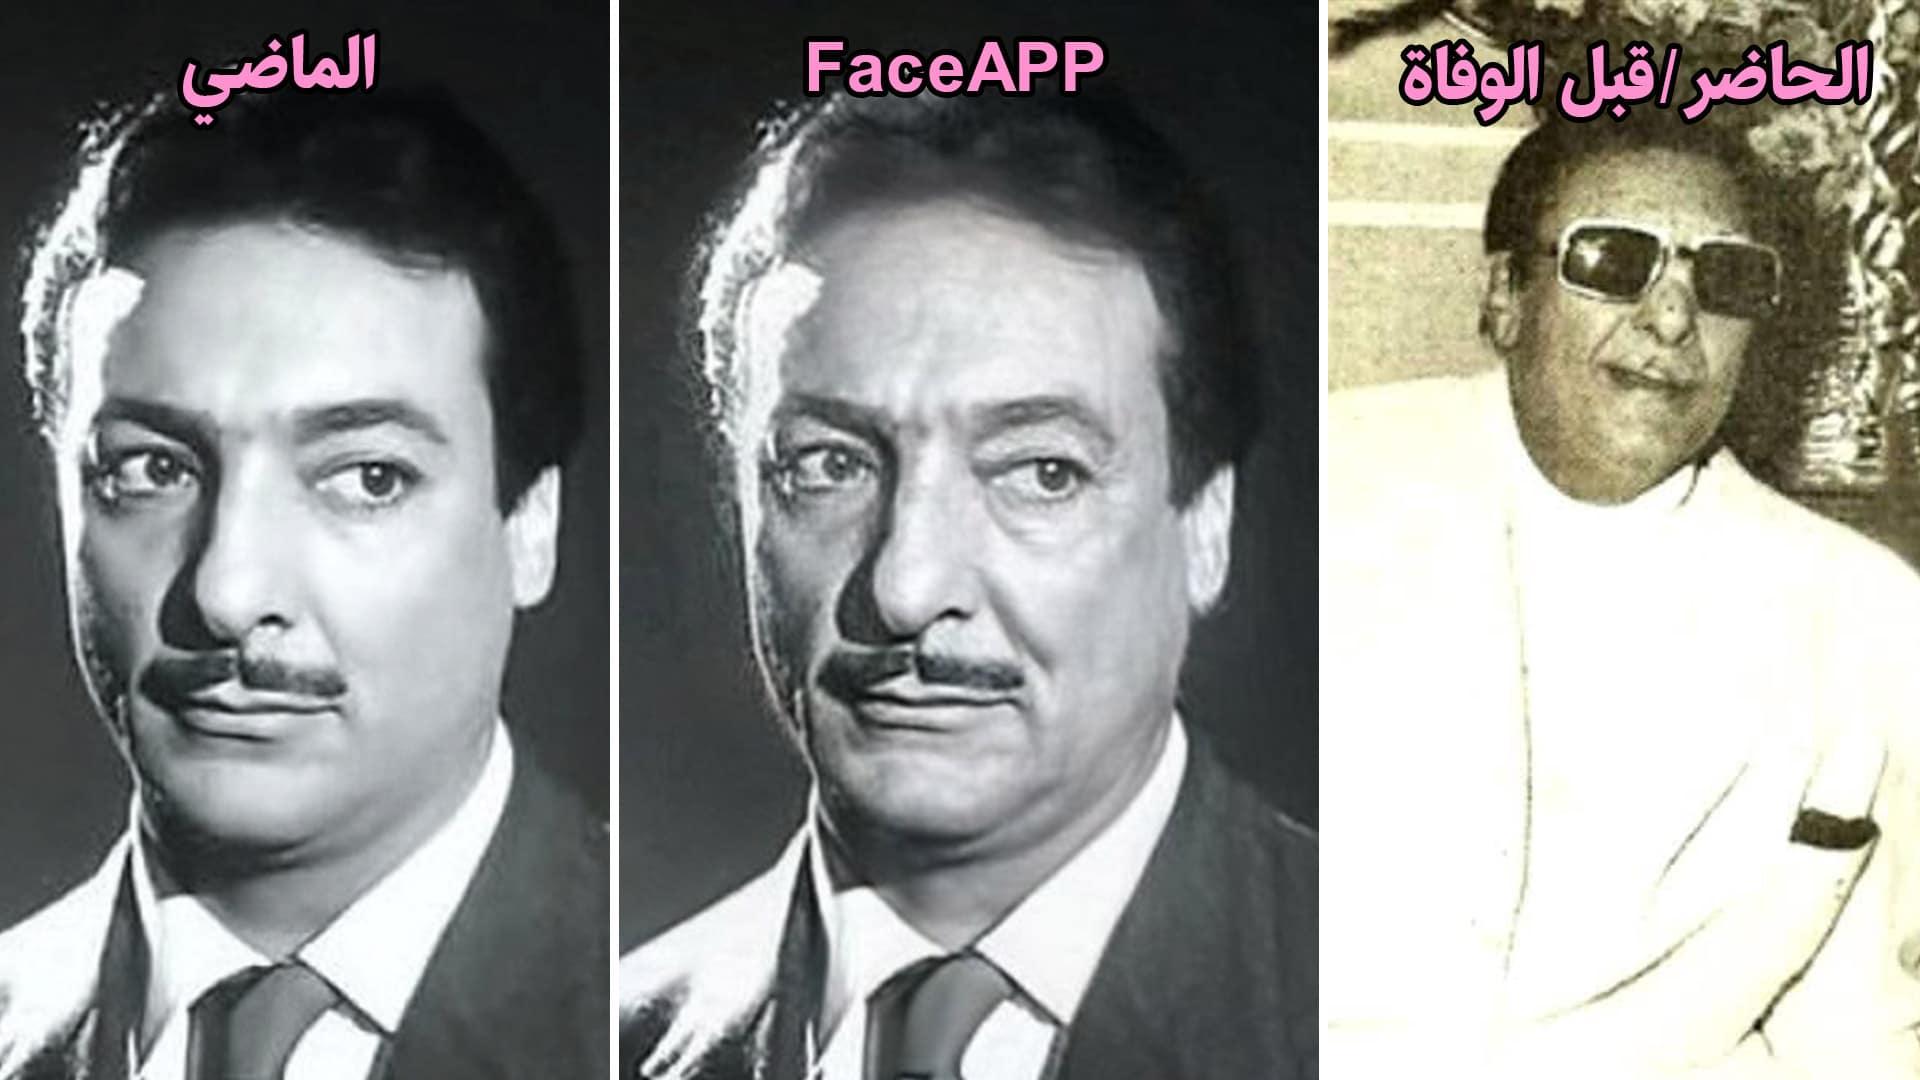 رشدي أباظة - face app